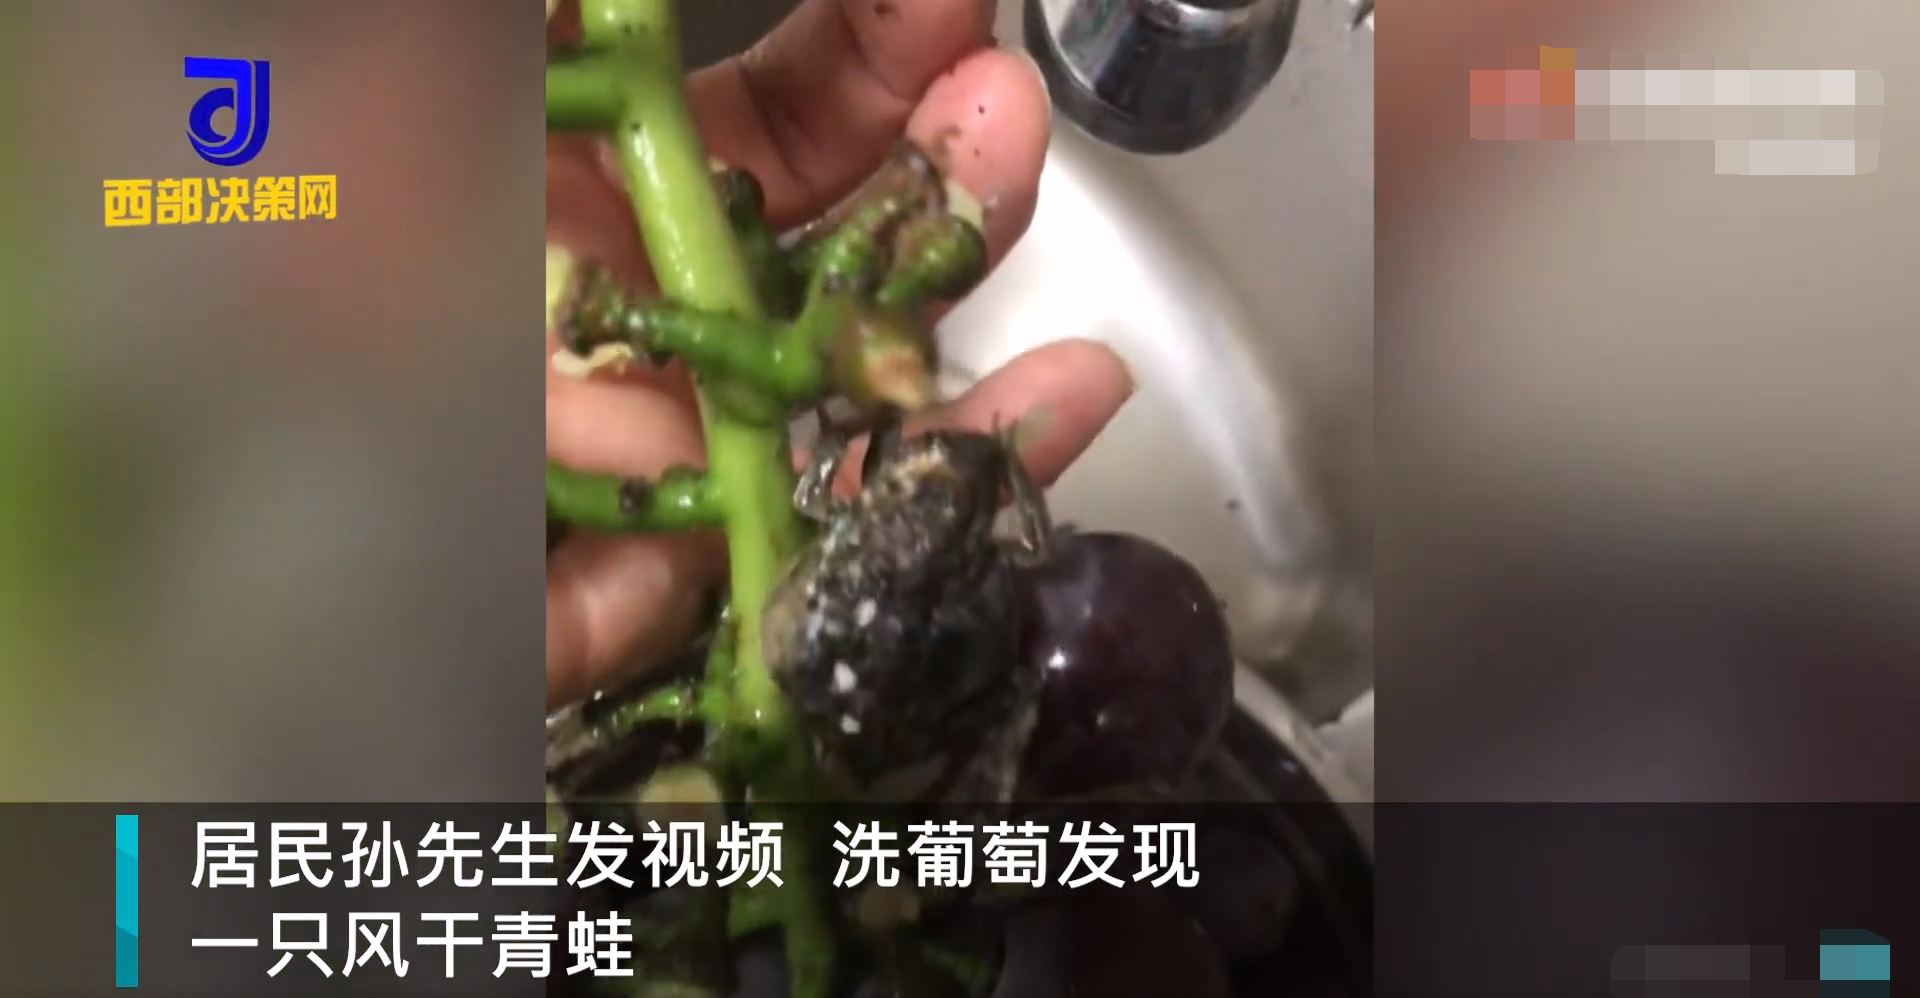 安徽一男子洗葡萄洗出风干青蛙 ：挺像干葡萄，瞬间就不想吃了